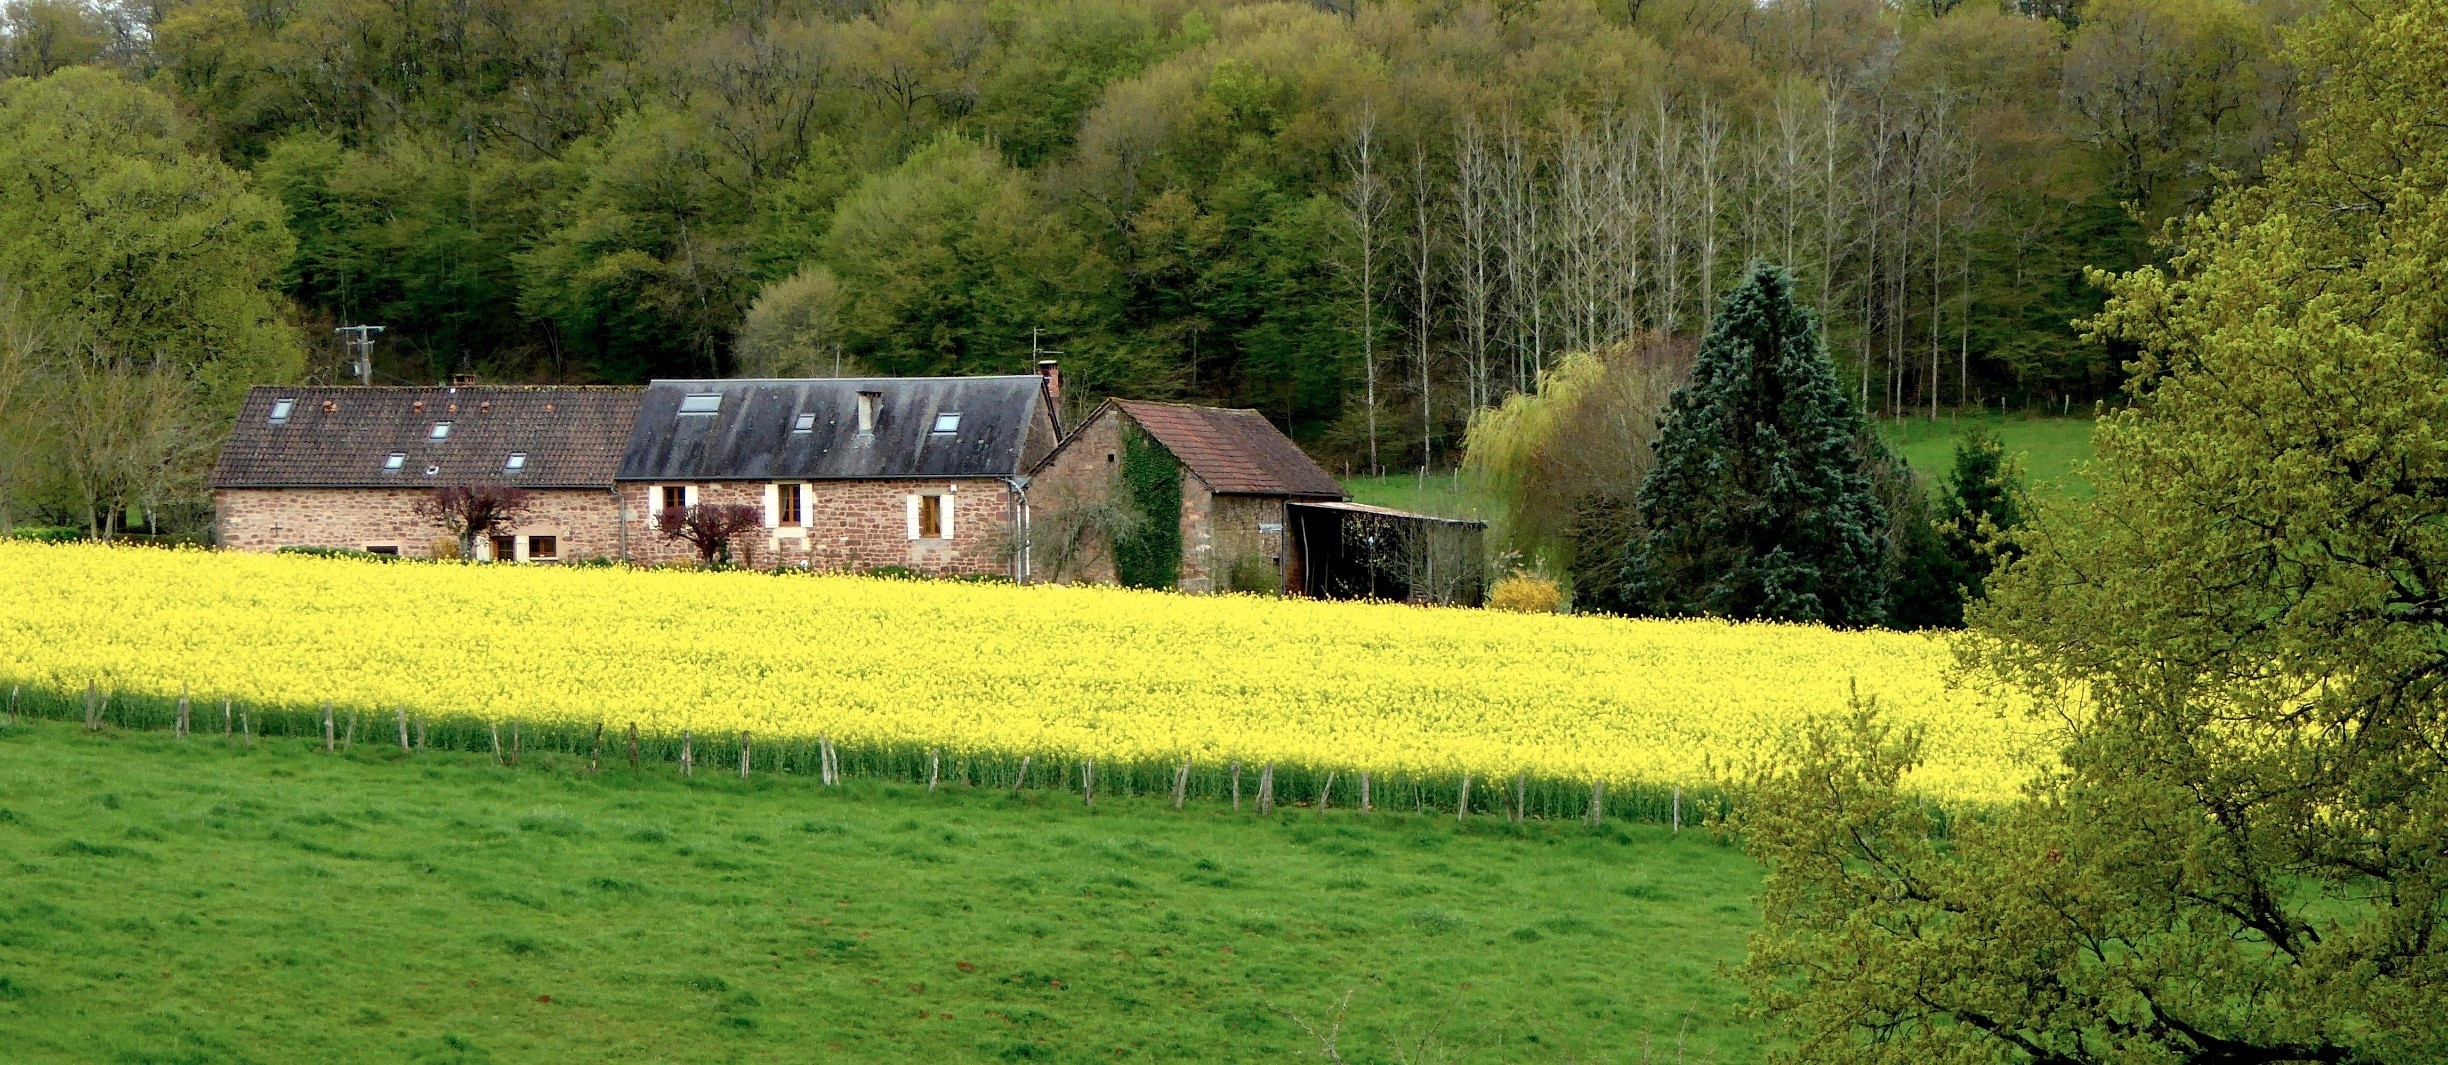 Badefols-d’Ans, Dordogne, France